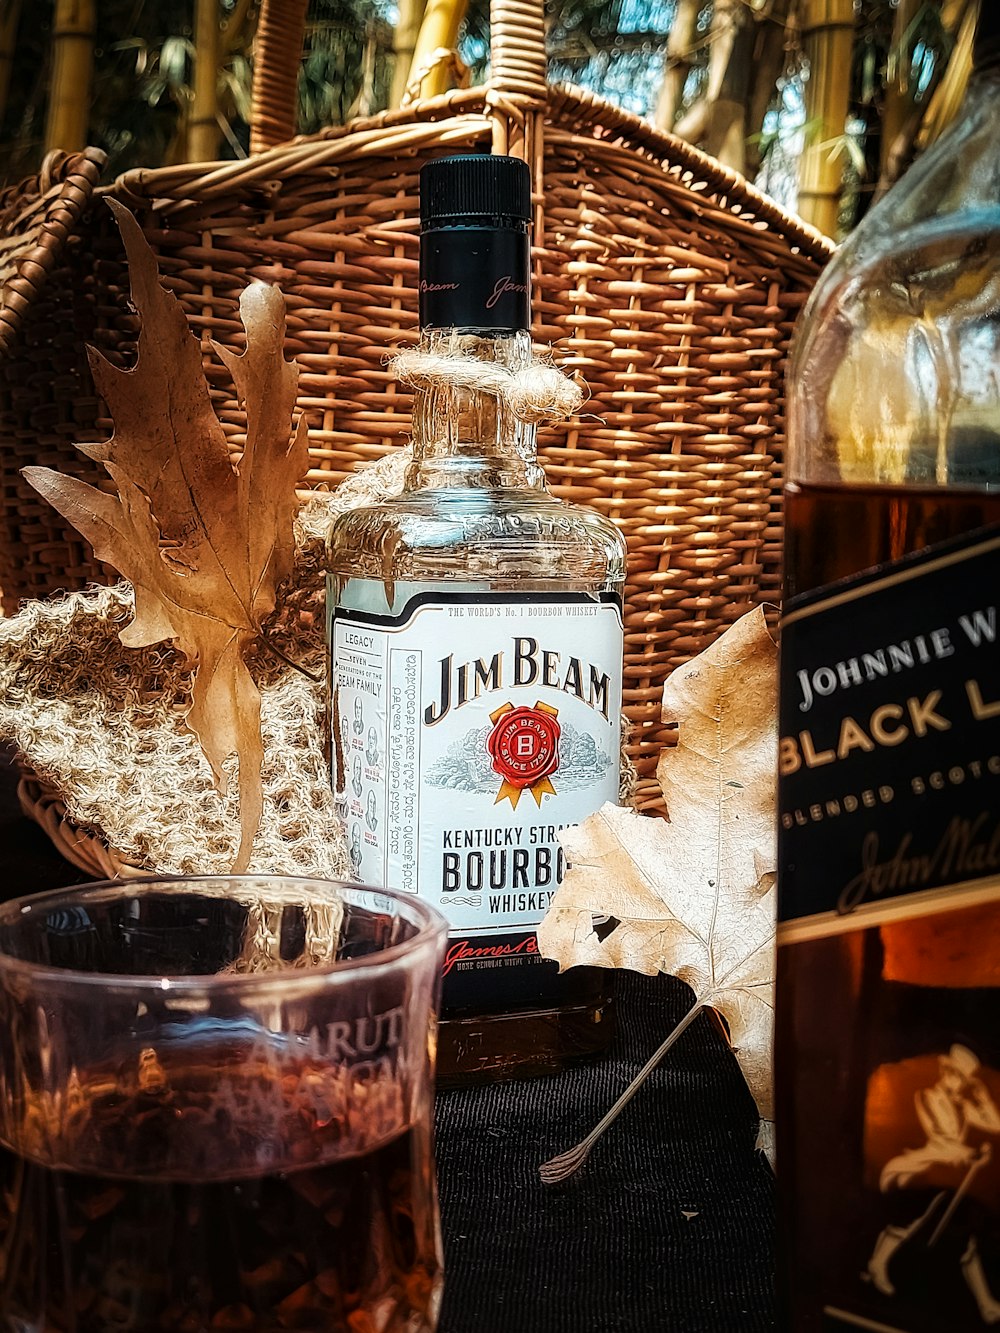 a bottle of john beam bourbon next to a glass